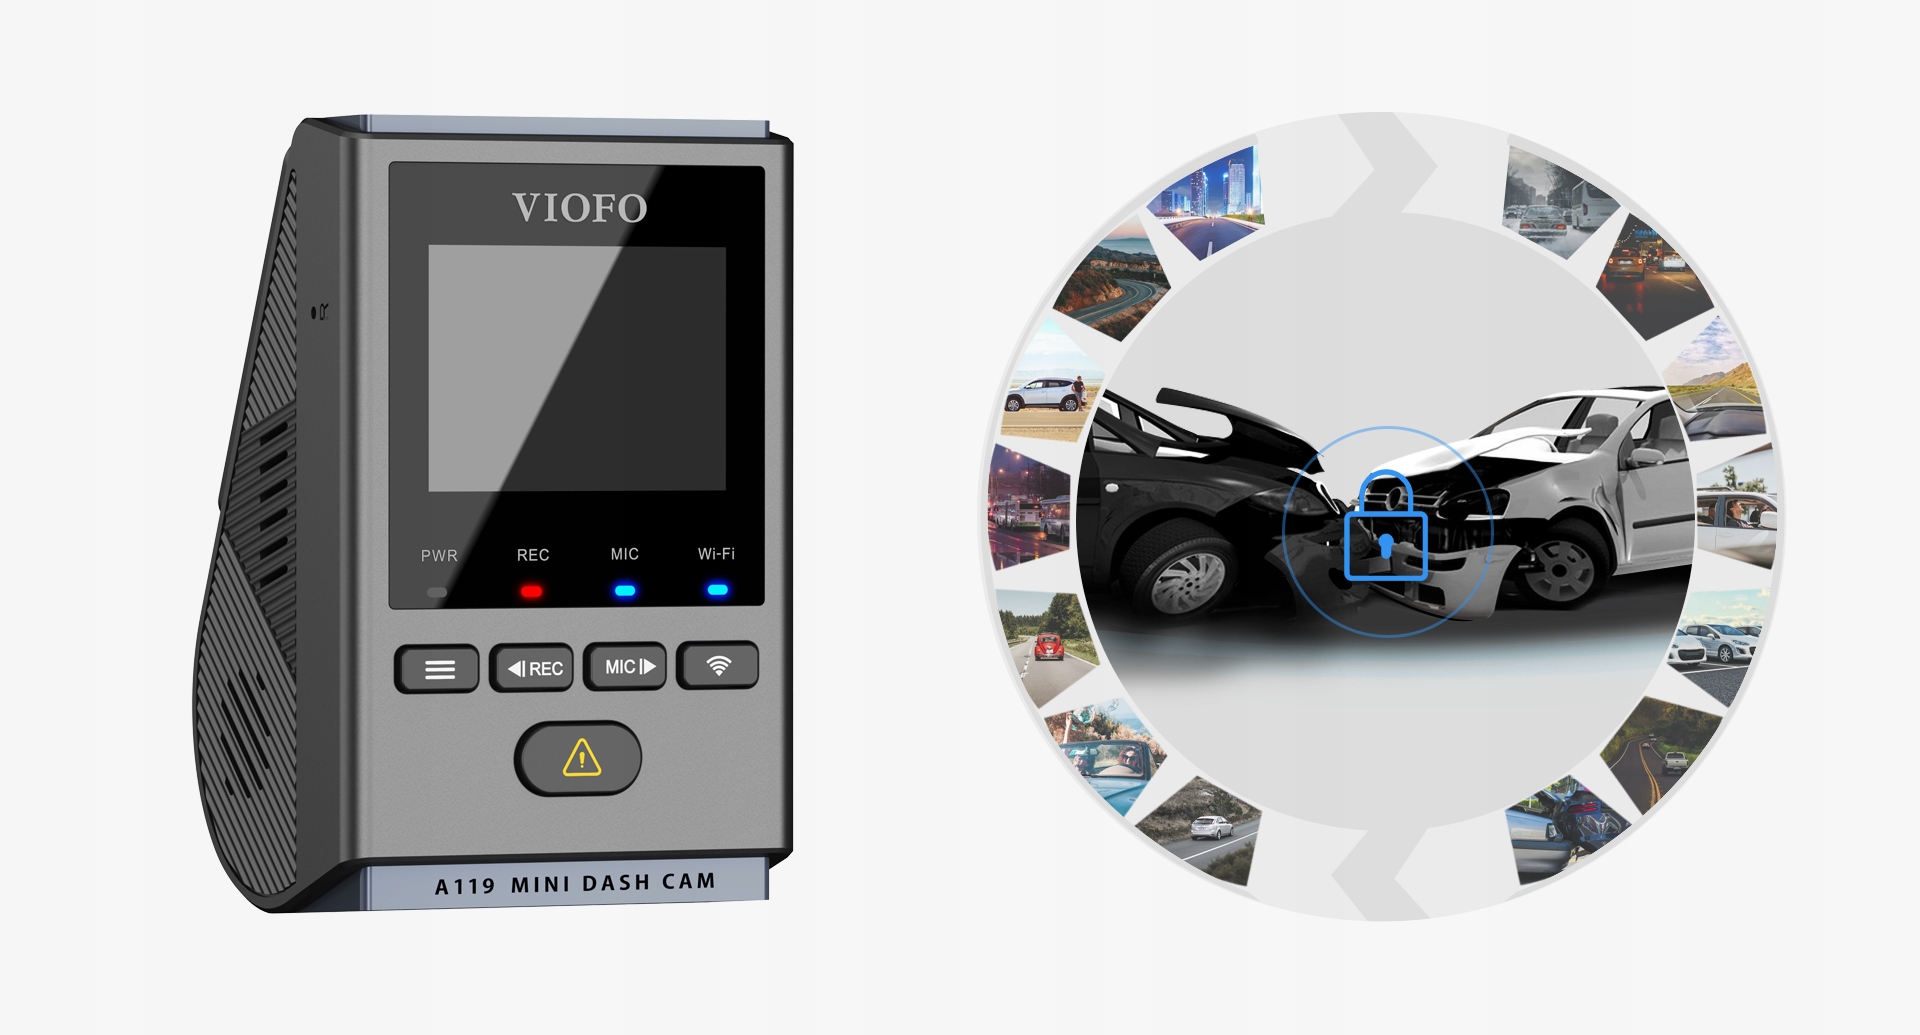 Rejestrator jazdy Viofo A119 Mini 2 - Opinie i ceny na